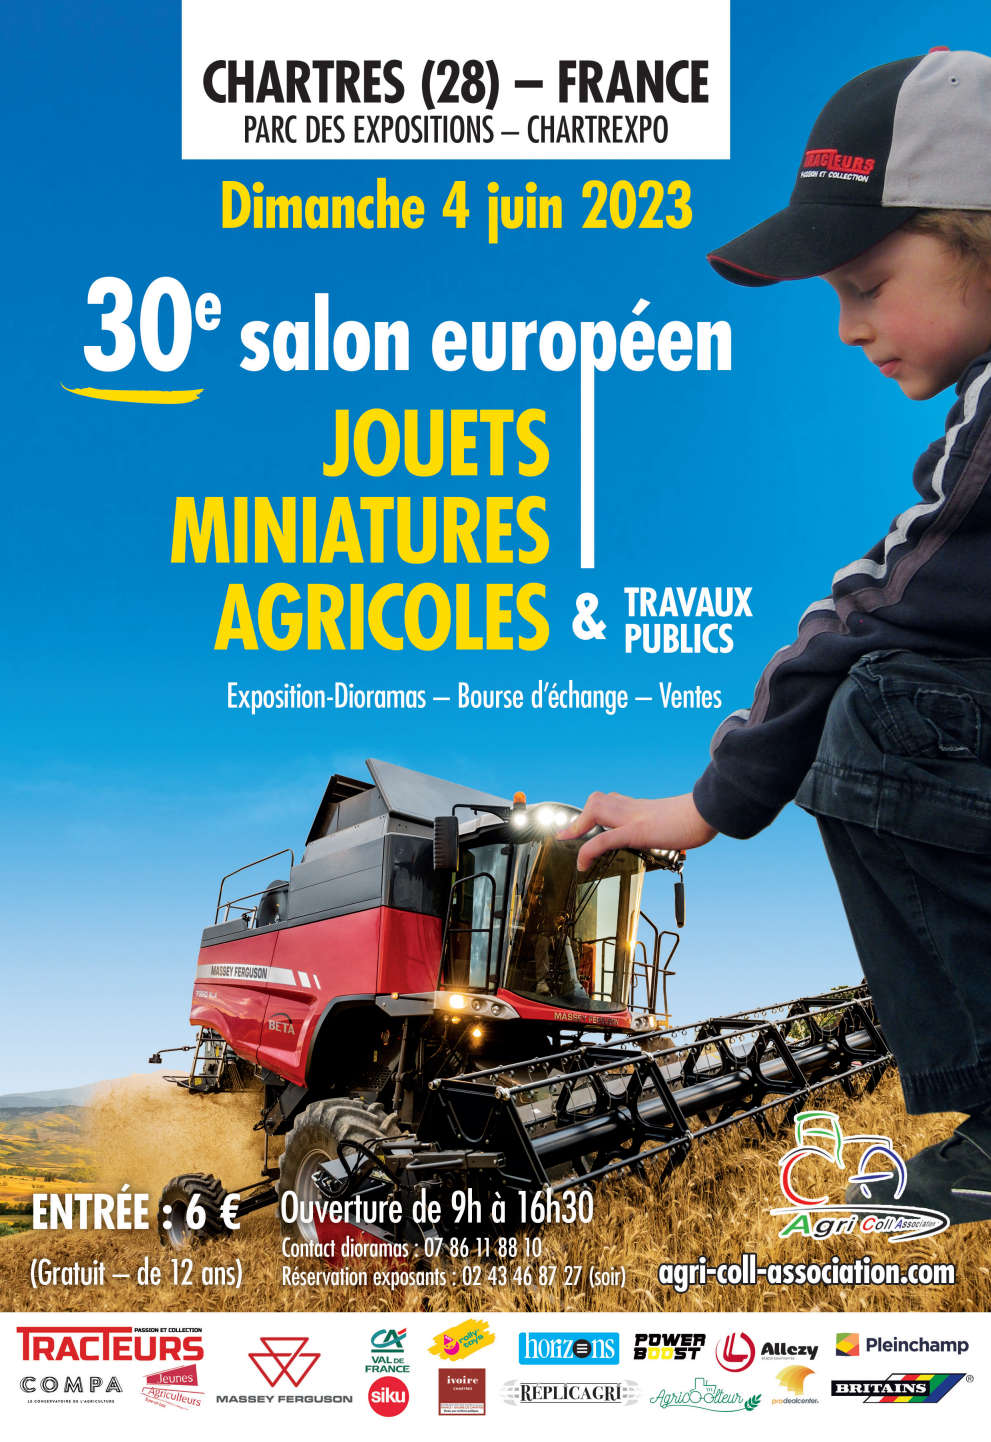 Salon européen des miniatures agricoles & Travaux Publics - Chartrexpo